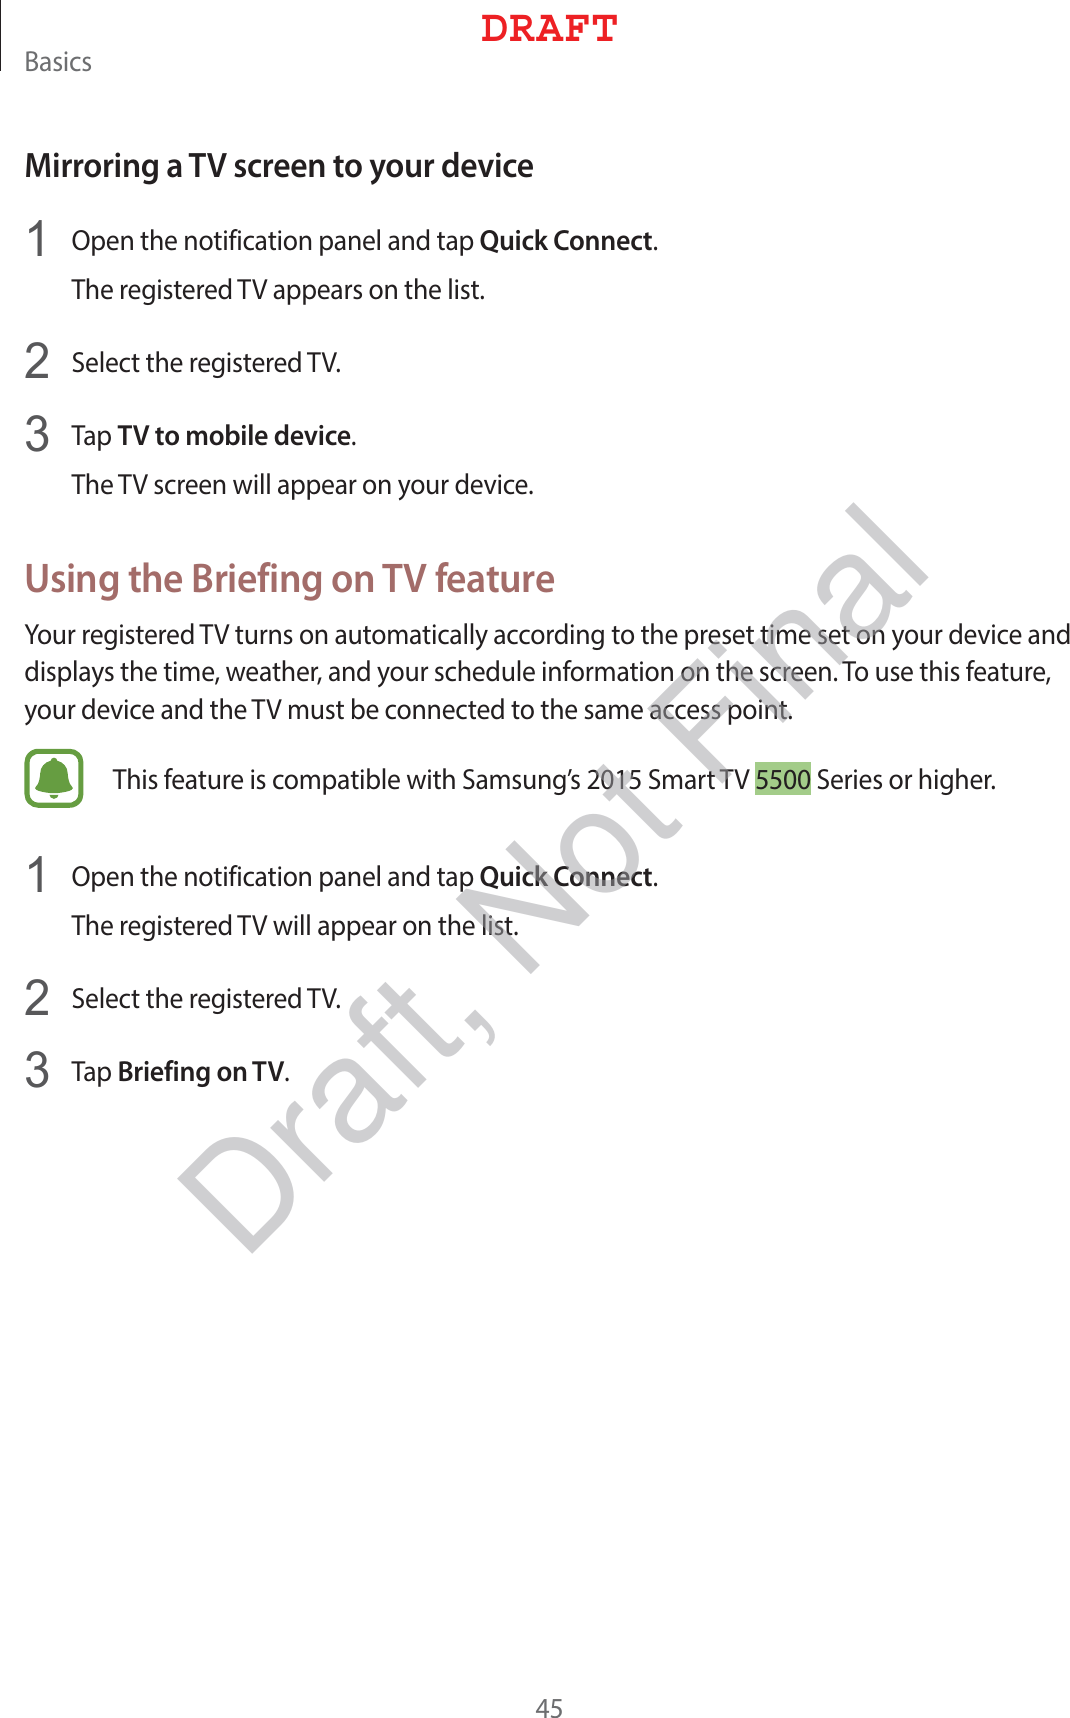 #BTJDTMirroring a TV screen to your device 0QFOUIFOPUJGJDBUJPOQBOFMBOEUBQQuick Connect5IFSFHJTUFSFE57BQQFBSTPOUIFMJTU 4FMFDUUIFSFHJTUFSFE57 5BQTV to mobile device5IF57TDSFFOXJMMBQQFBSPOZPVSEFWJDFUsing the Briefing on TV feature:PVSSFHJTUFSFE57UVSOTPOBVUPNBUJDBMMZBDDPSEJOHUPUIFQSFTFUUJNFTFUPOZPVSEFWJDFBOEEJTQMBZTUIFUJNFXFBUIFSBOEZPVSTDIFEVMFJOGPSNBUJPOPOUIFTDSFFO5PVTFUIJTGFBUVSFZPVSEFWJDFBOEUIF57NVTUCFDPOOFDUFEUPUIFTBNFBDDFTTQPJOU5IJTGFBUVSFJTDPNQBUJCMFXJUI4BNTVOHT4NBSU574FSJFTPSIJHIFS 0QFOUIFOPUJGJDBUJPOQBOFMBOEUBQQuick Connect5IFSFHJTUFSFE57XJMMBQQFBSPOUIFMJTU 4FMFDUUIFSFHJTUFSFE57 5BQBriefing on TV%3&quot;&apos;5Draft, Not Final